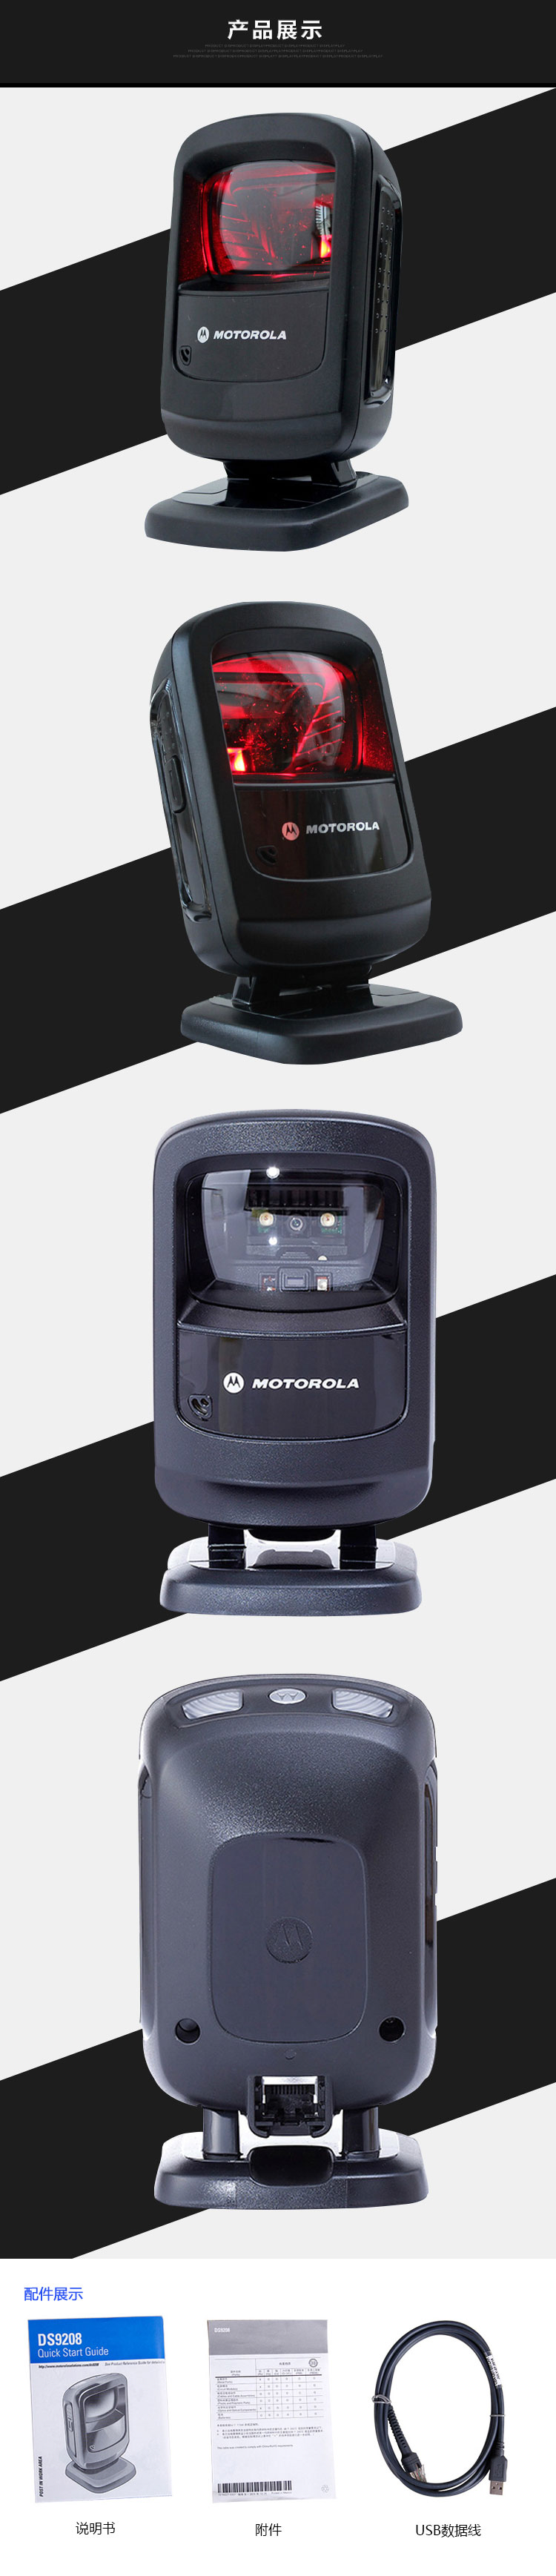 摩托罗拉DS9208条码全向激光扫描平台扫描枪